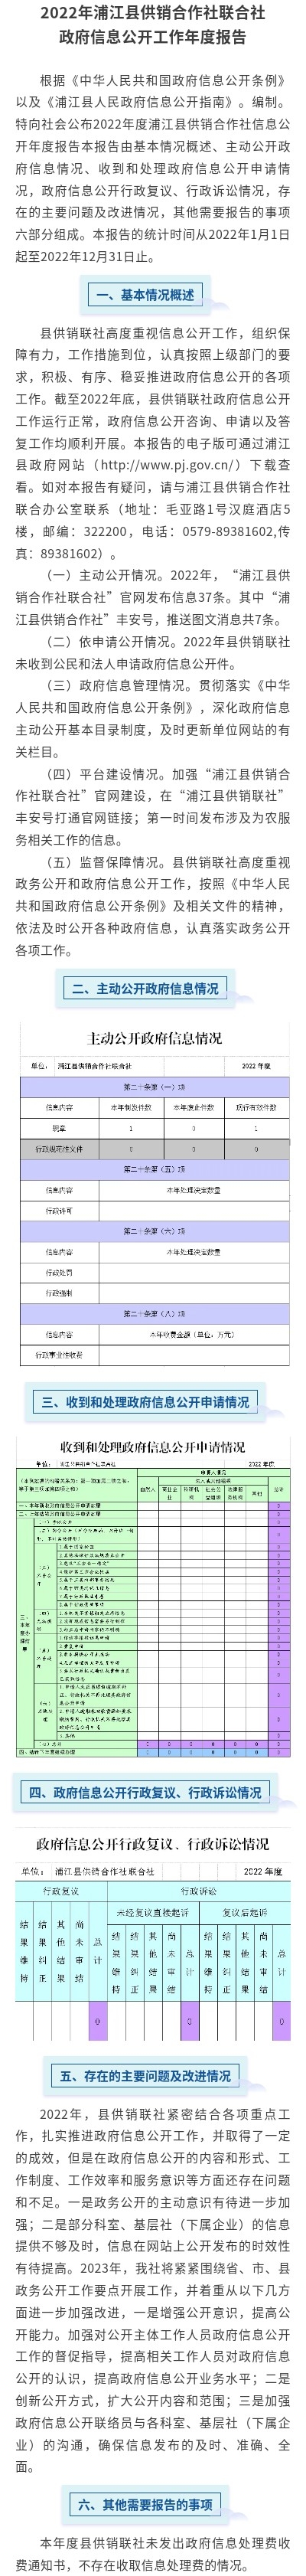 2022年浦江县供销合作社联合社政府信息公开工作年度报告图解.jpg